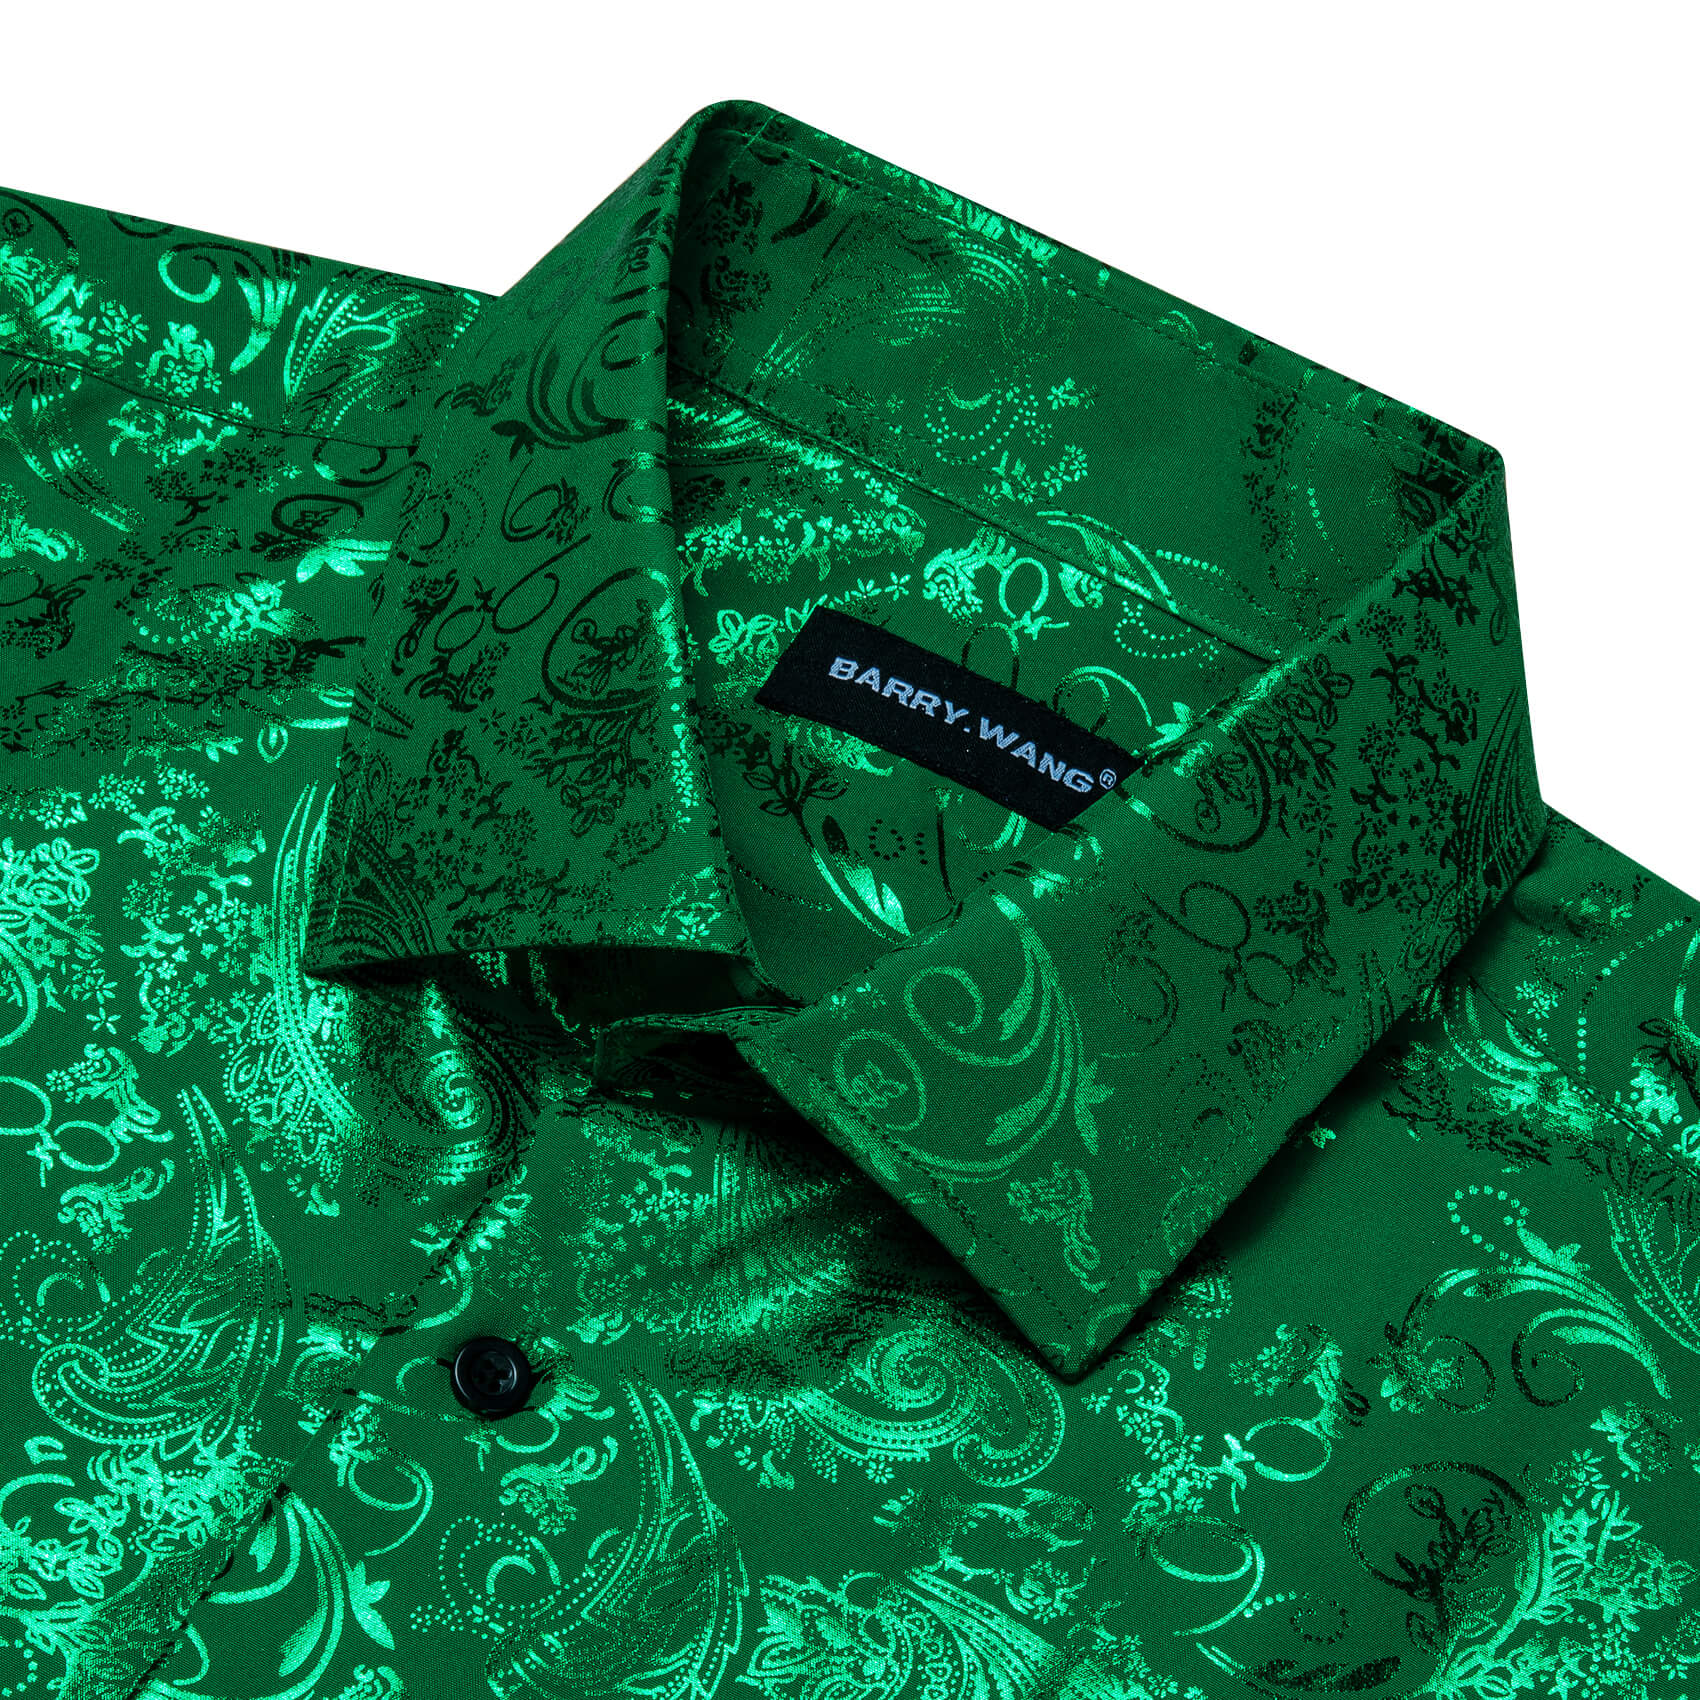 Barry.wang Long Sleeve Shirt Emerald Green Silk Floral Shirt for Men